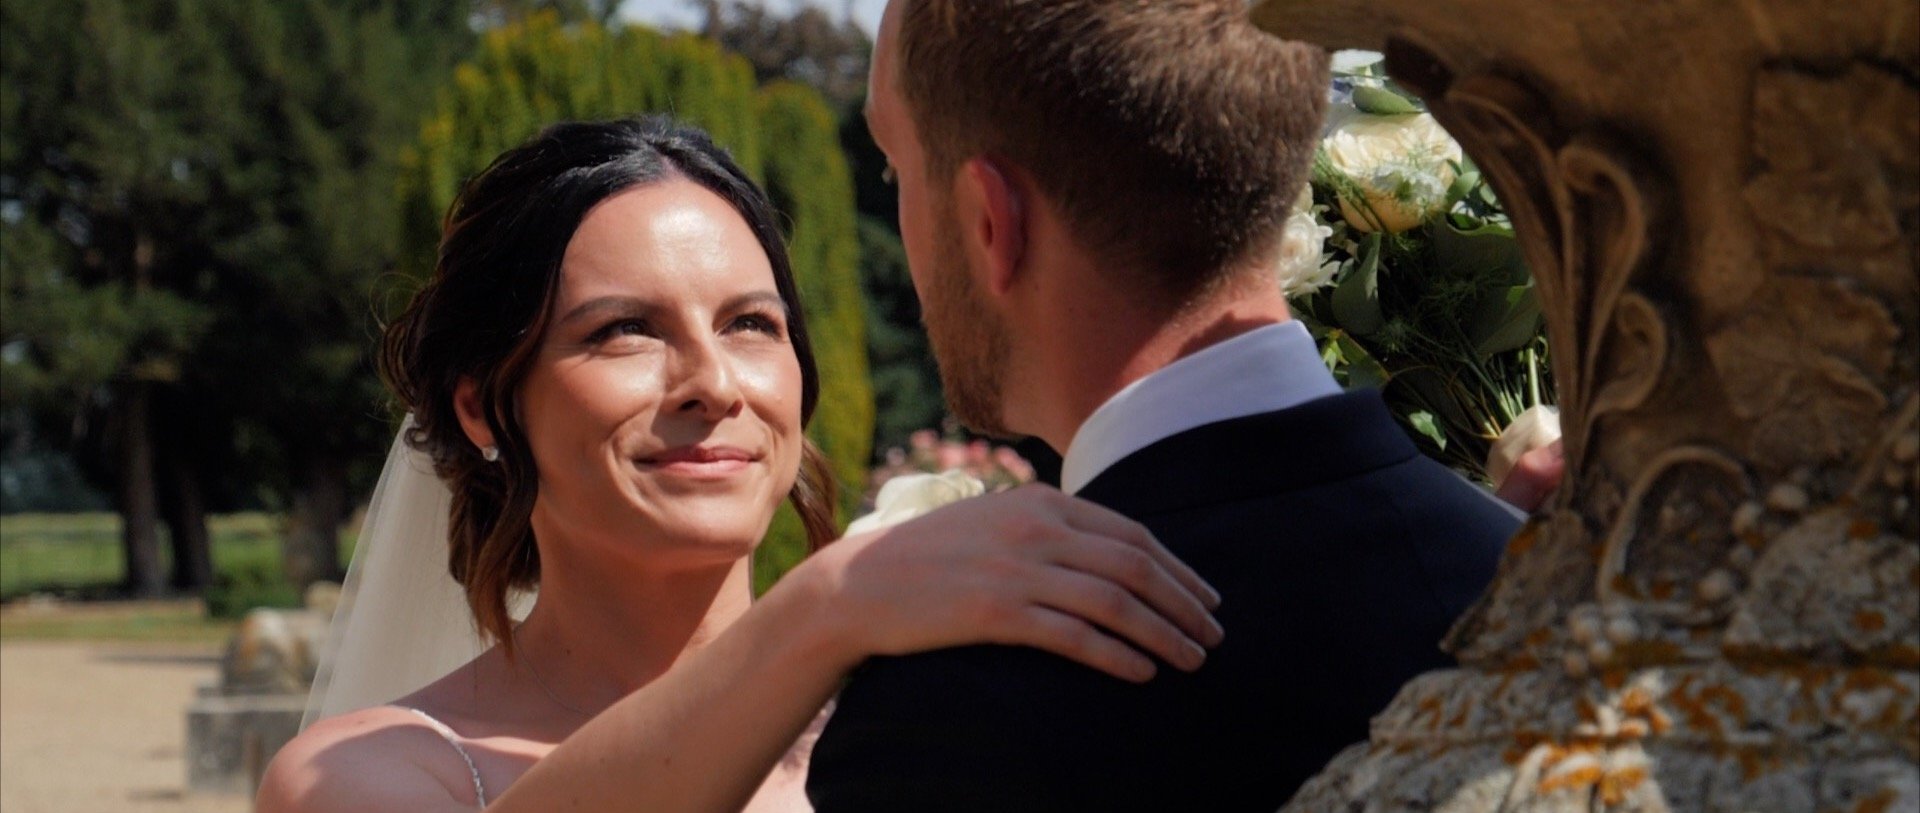 Stunning smile on bride in wedding video - 3 Cheers Media.jpg